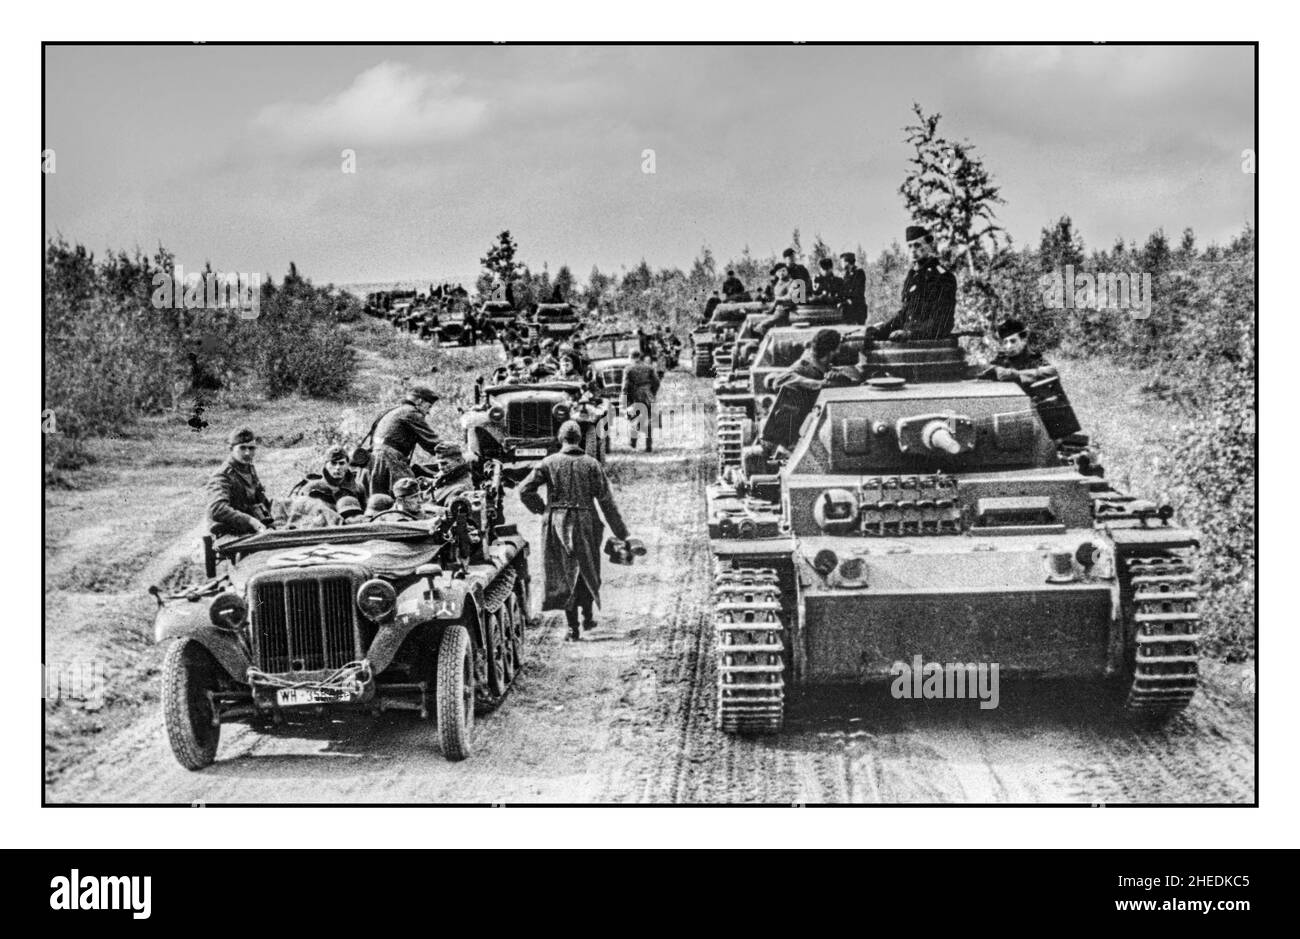 OPÉRATION BARBAROSSA WW2 Une colonne des forces armées allemandes nazies, y compris les chars PzKpfw III Ausf G sur une route forestière sur le front est de Moscou. 1941 Russie soviétique opération Barbarossa, nom original opération Fritz, pendant la Seconde Guerre mondiale, nom de code pour l'invasion allemande de l'Union soviétique, qui a été lancée sur 22 juin 1941. L'échec des troupes allemandes à vaincre les forces soviétiques russes dans la campagne a marqué un tournant décisif dans la guerre. Banque D'Images